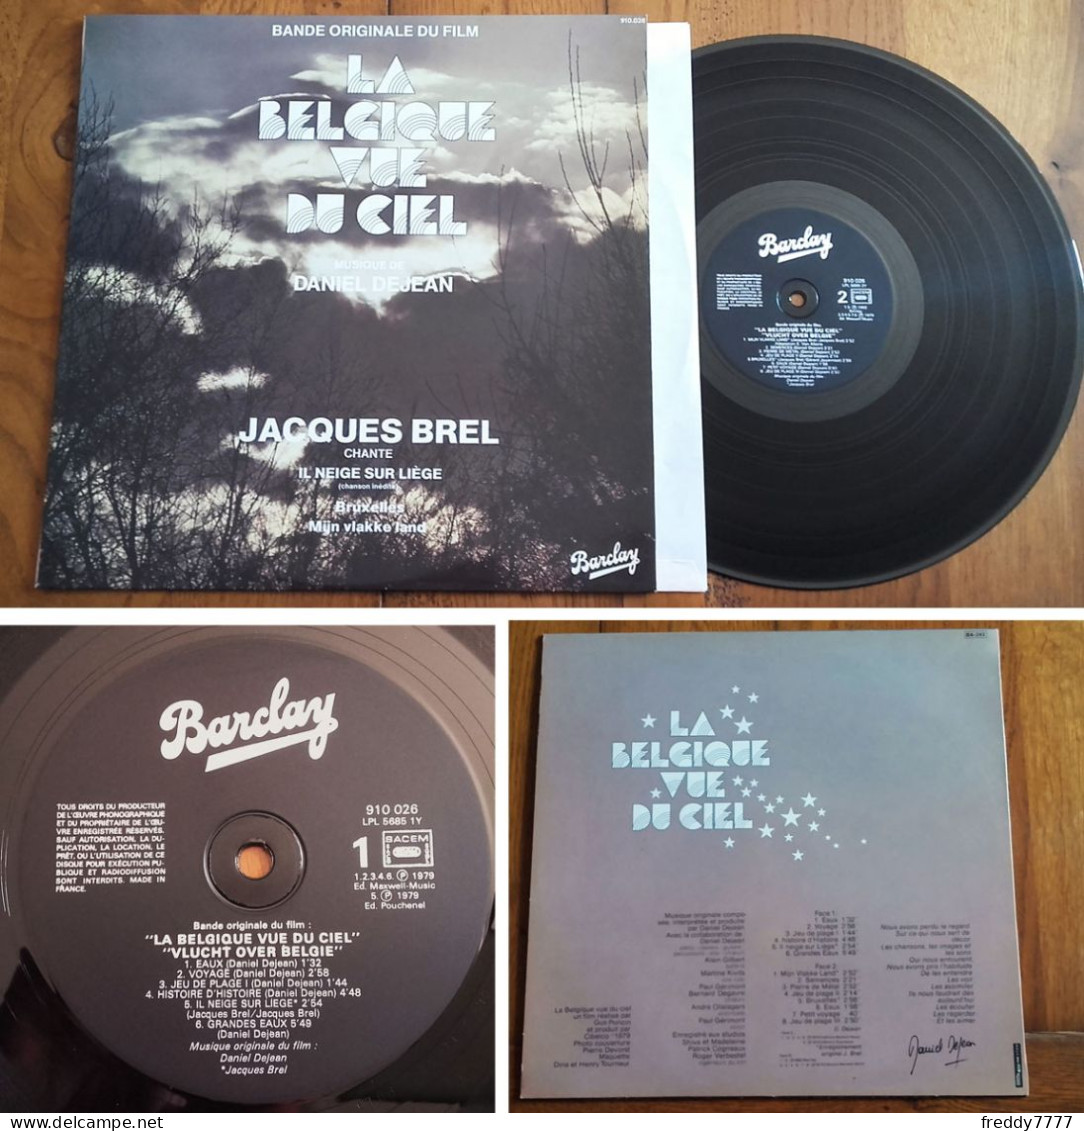 RARE French LP 33t RPM (12") BOF OST «LA BELGIQUE VUE DU CIEL» (Jacques Brel, 1980) - Música De Peliculas